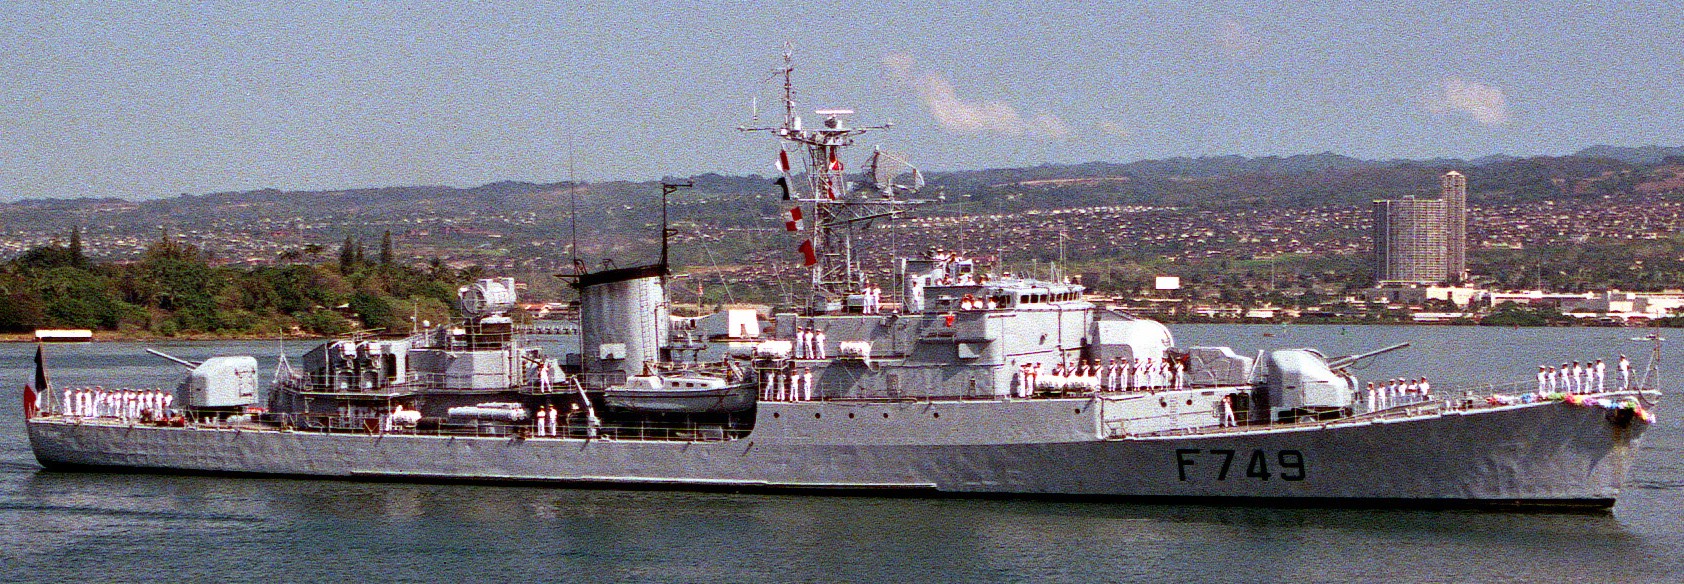 riviere class frigate aviso escorteur f-749 enseigne de vaisseau henry french navy marine nationale 0502